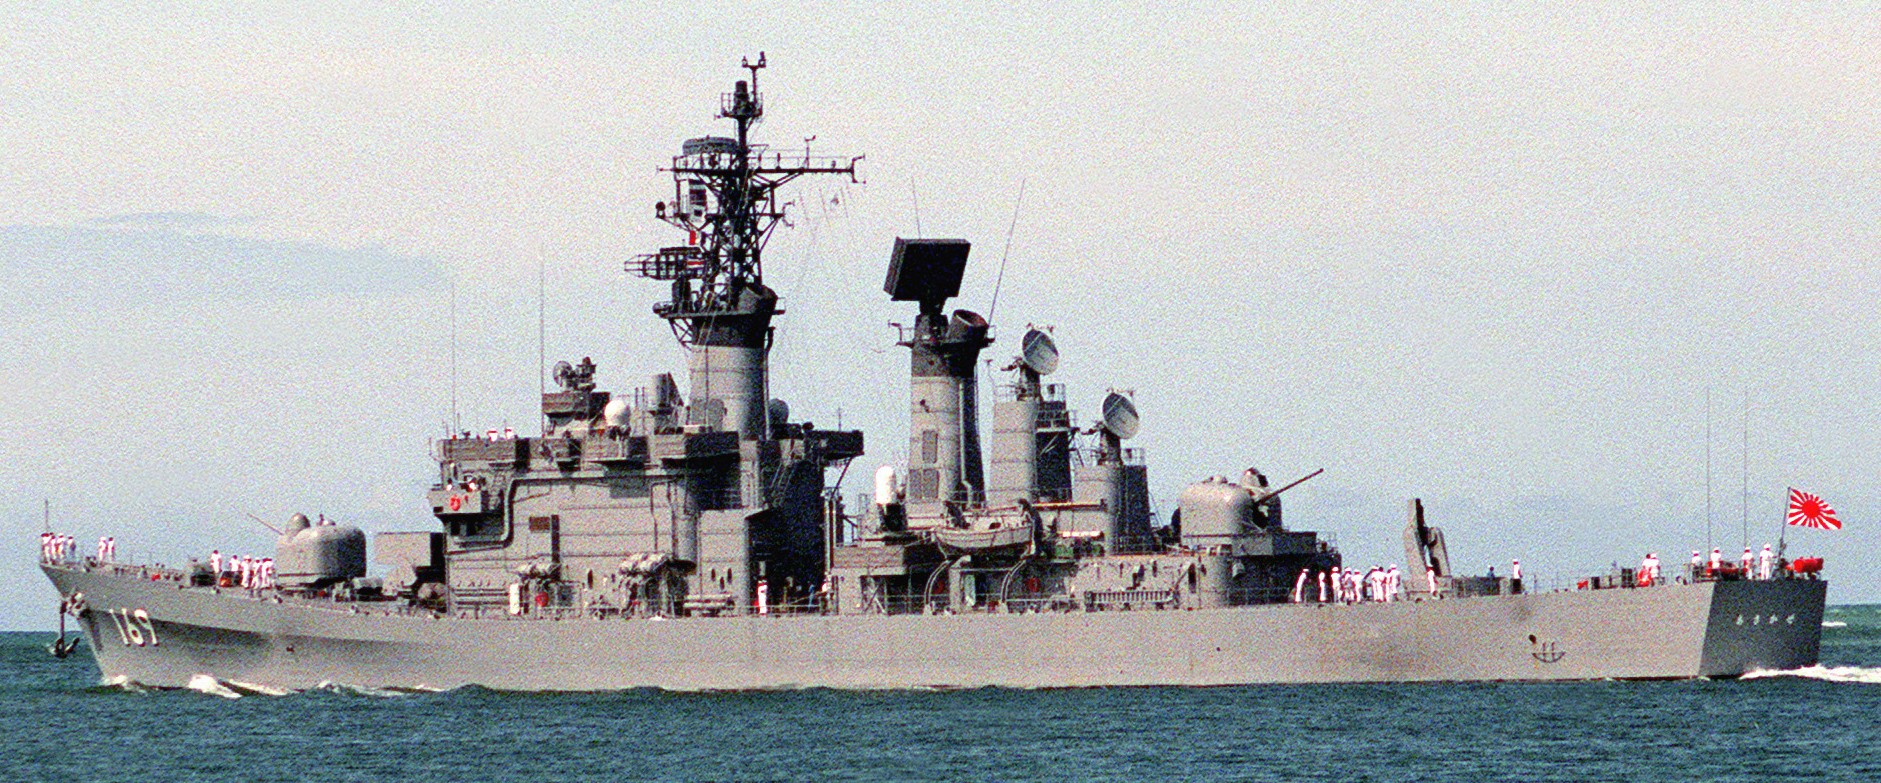 ddg-169 jds asakaze guided missile destroyer japan maritime self defense force jmsdf navy 05